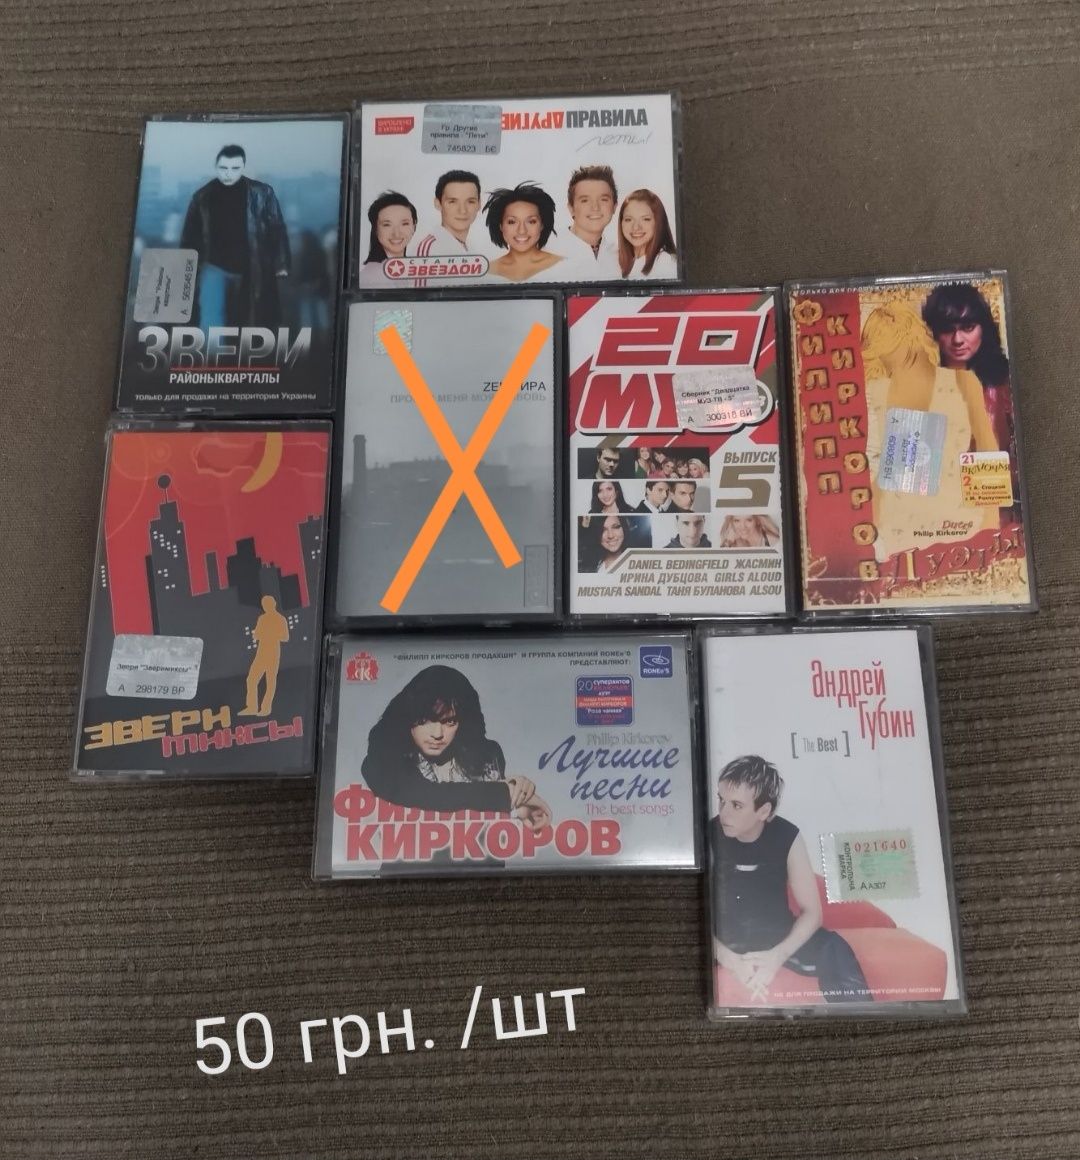 Аудиокассеты в ассортименте (украинская, русская и зарубежная эстрада)